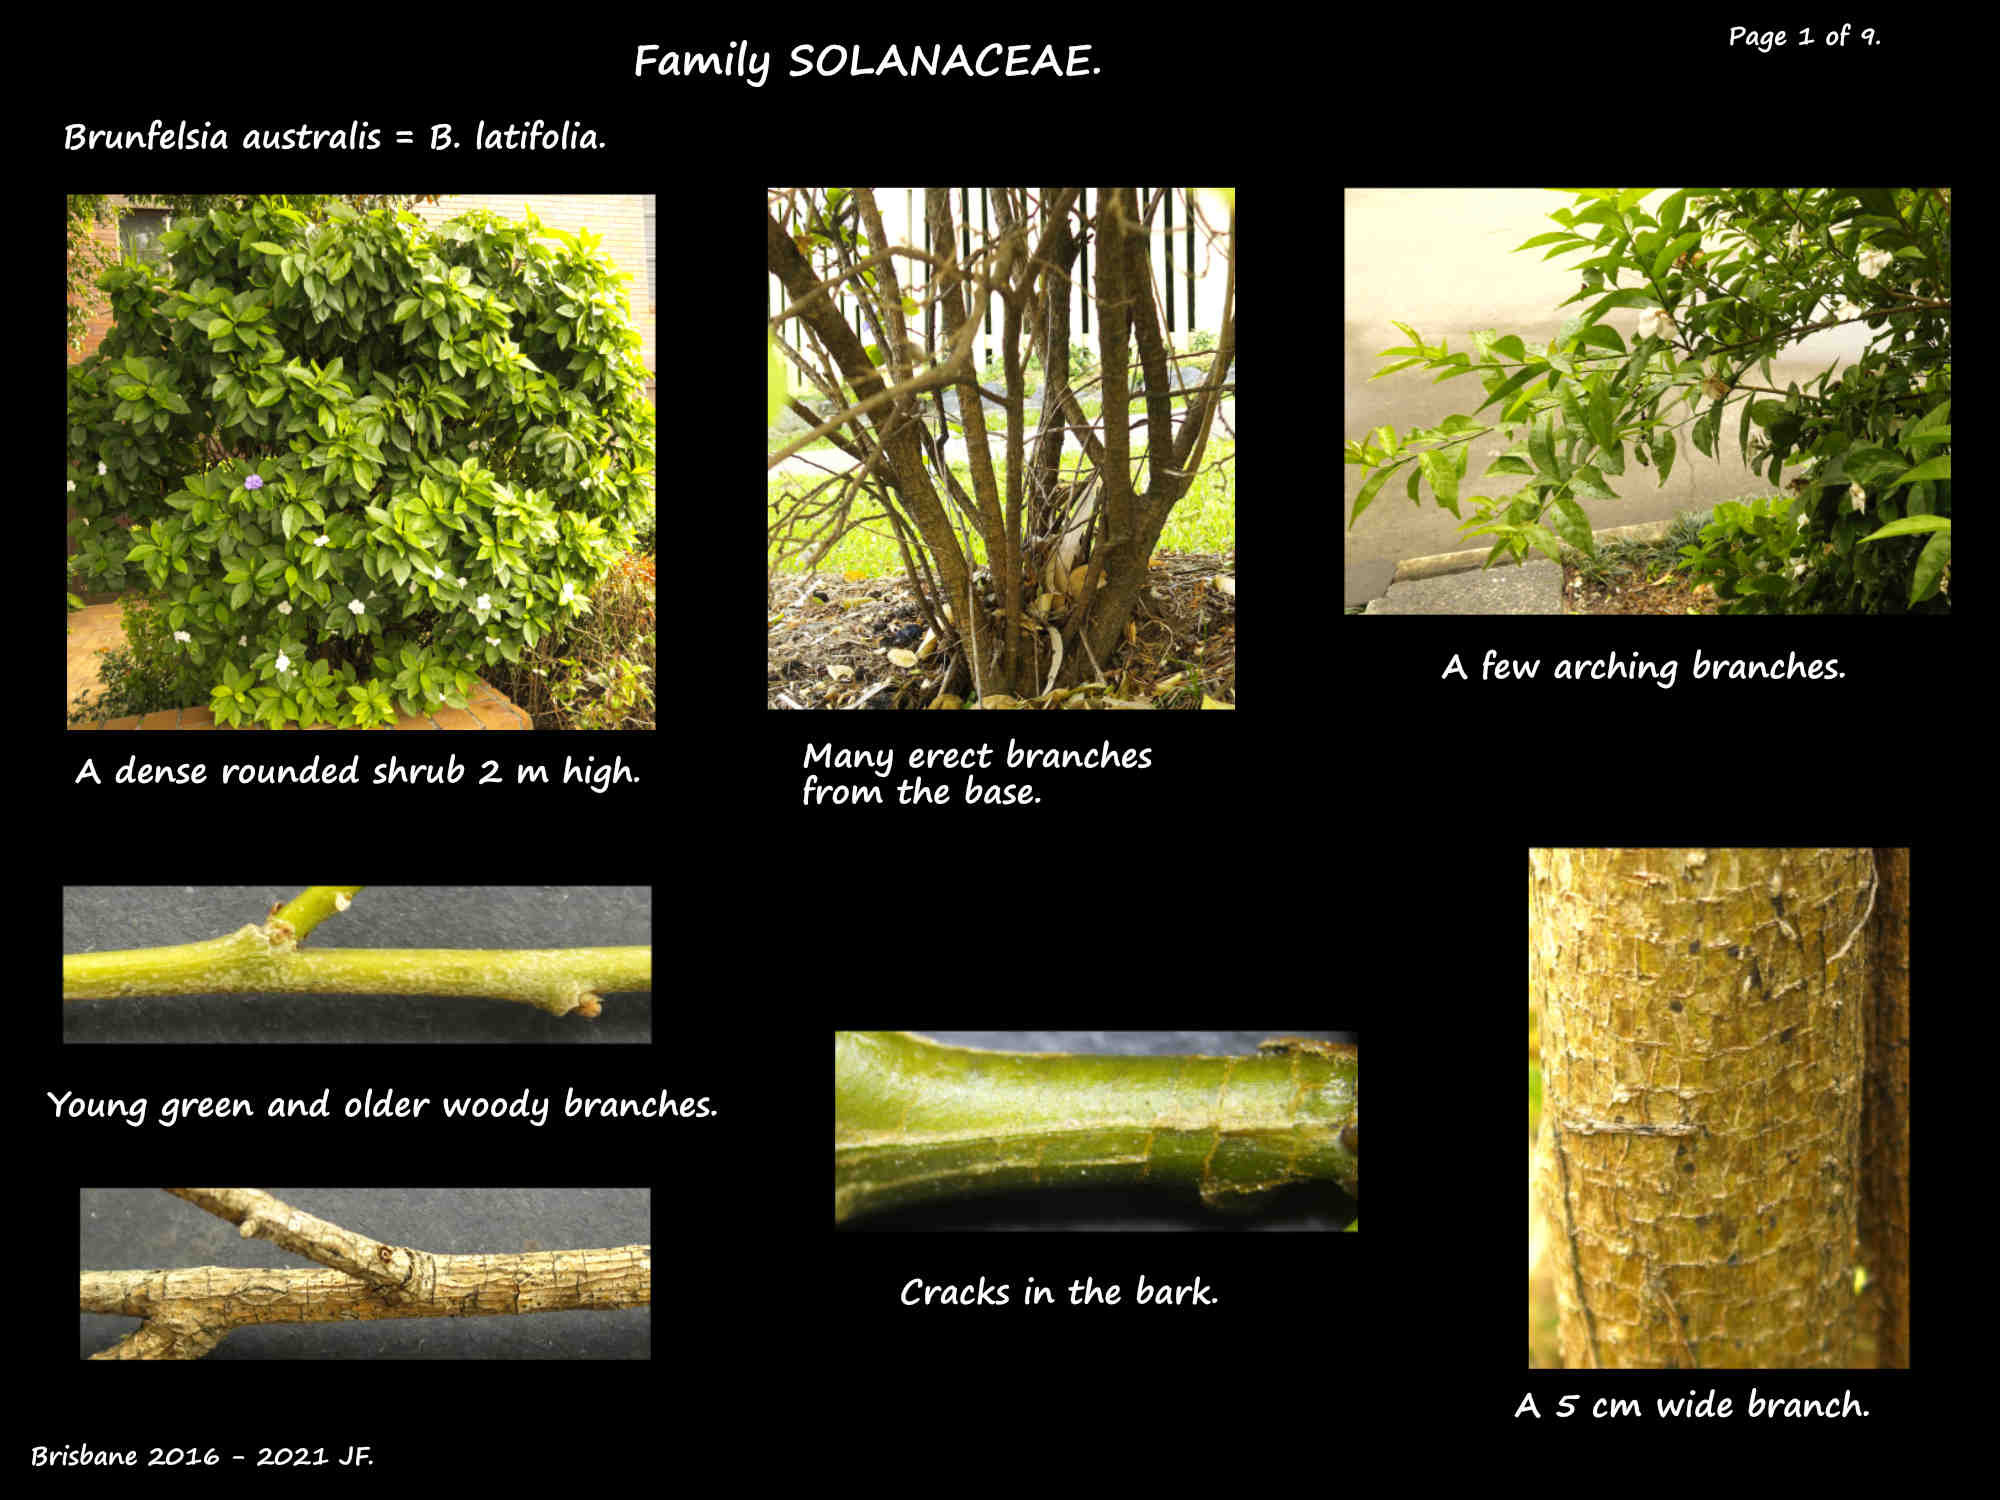 1 Brunfelsia australis shrub & branches